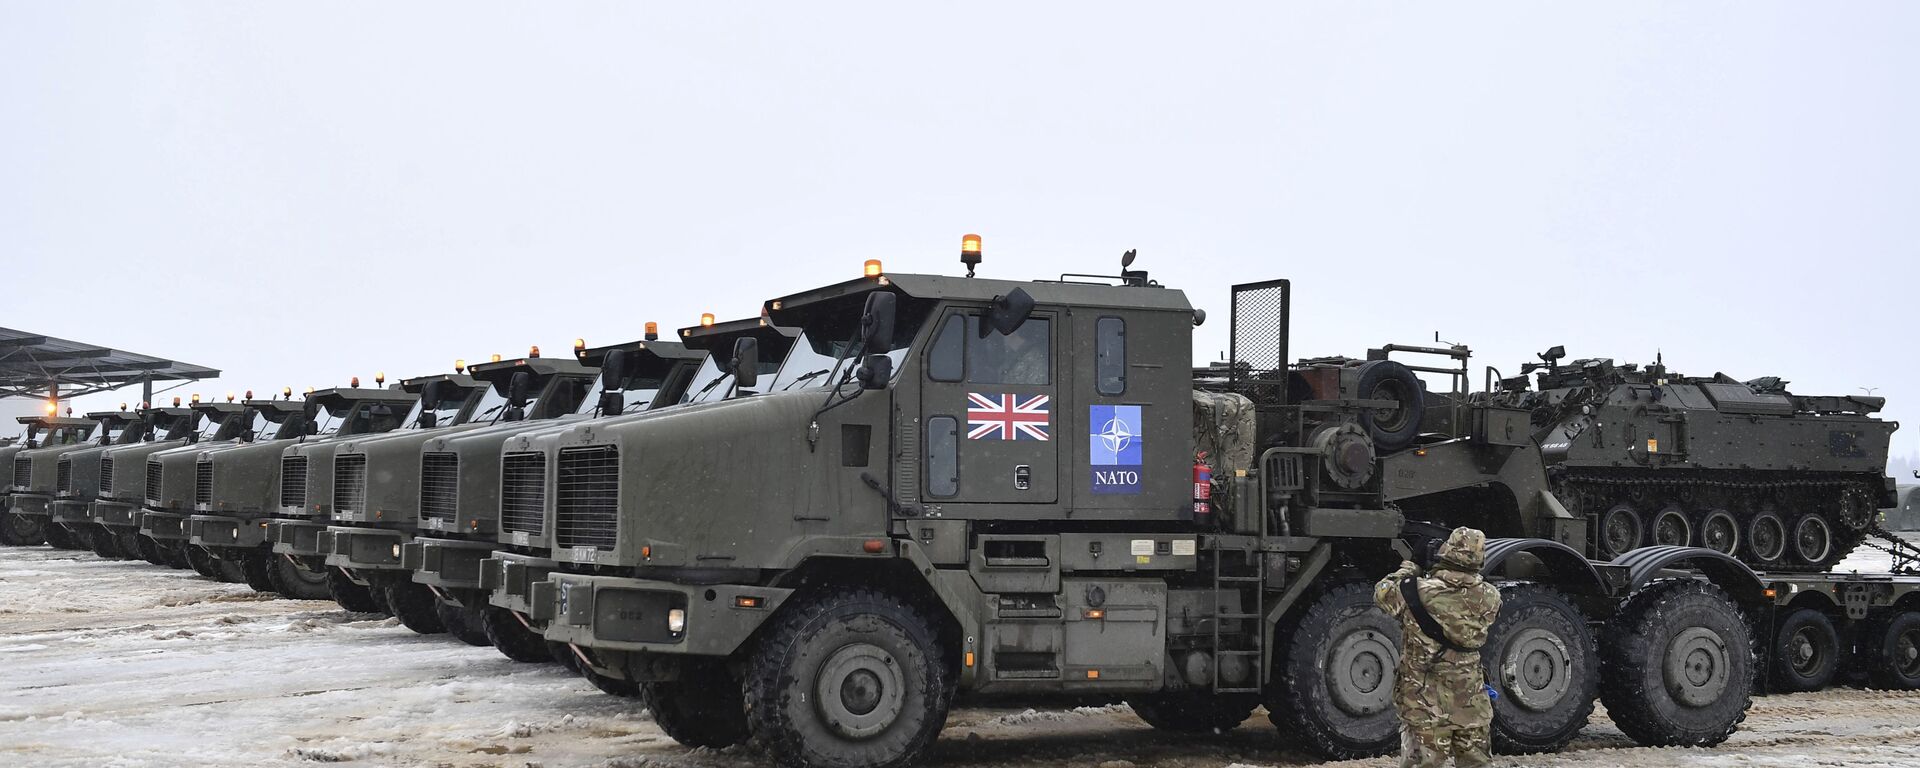 قوات الناتو على حدود روسيا - مدرعات تابعة لقوات الجيش البريطاني تصل إلى إستونيا 25 فبراير 2022 - سبوتنيك عربي, 1920, 04.12.2022